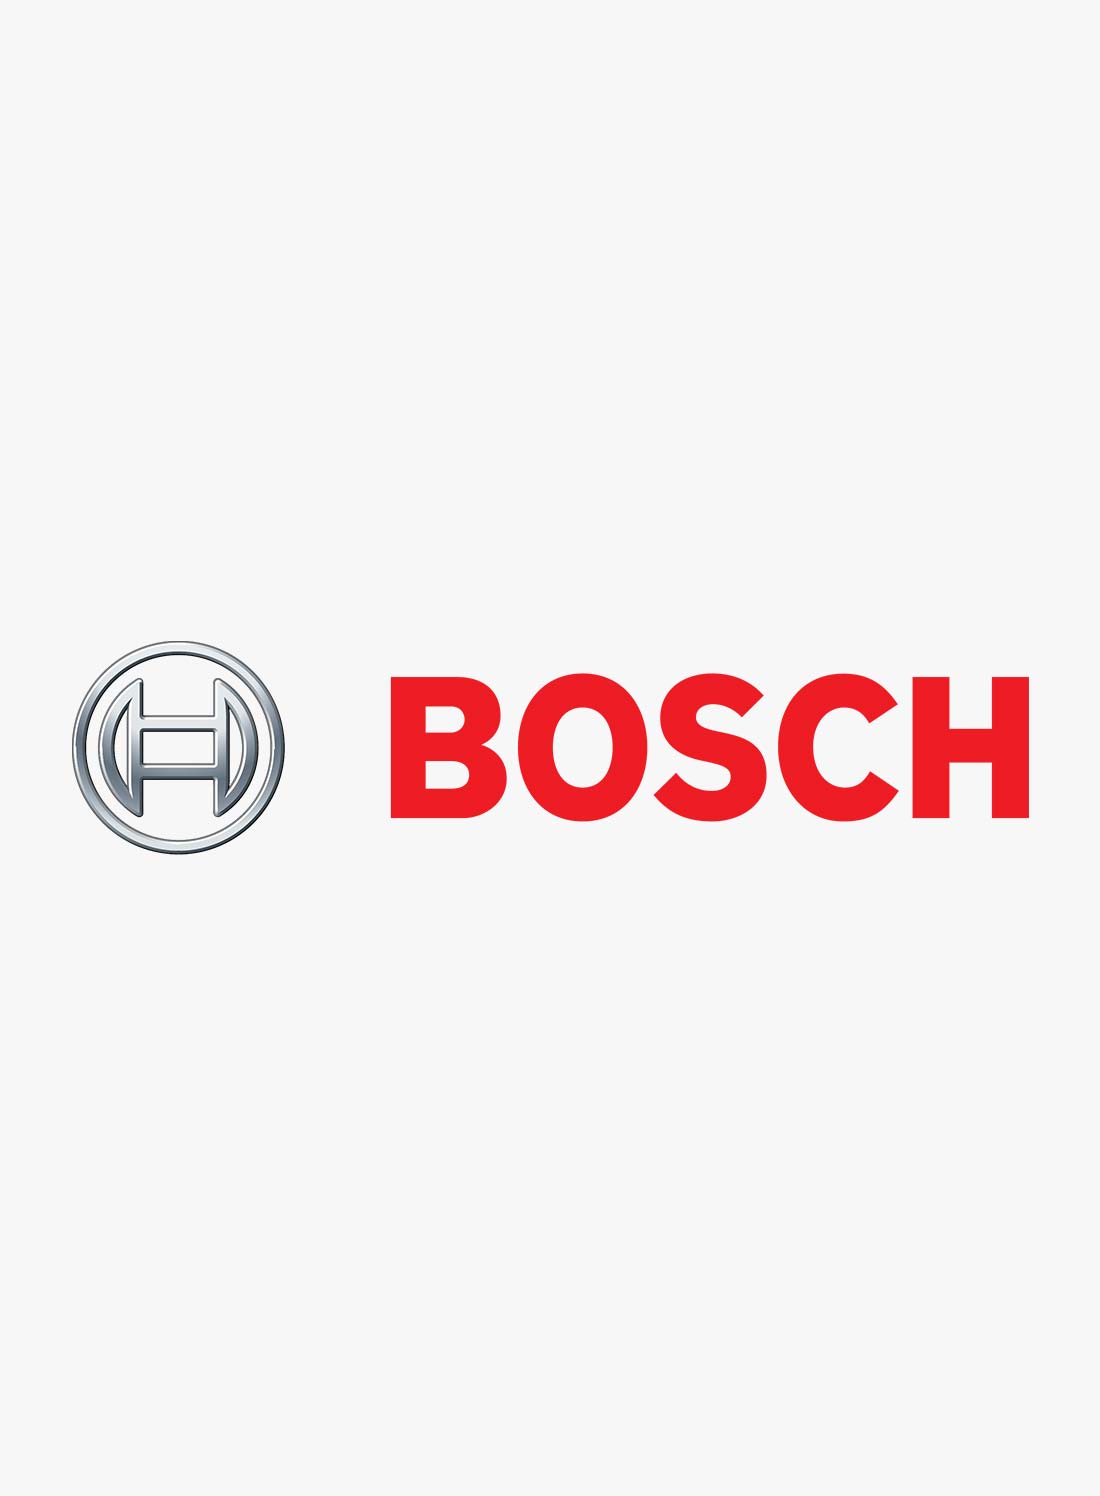 Bosch Kazakhstan